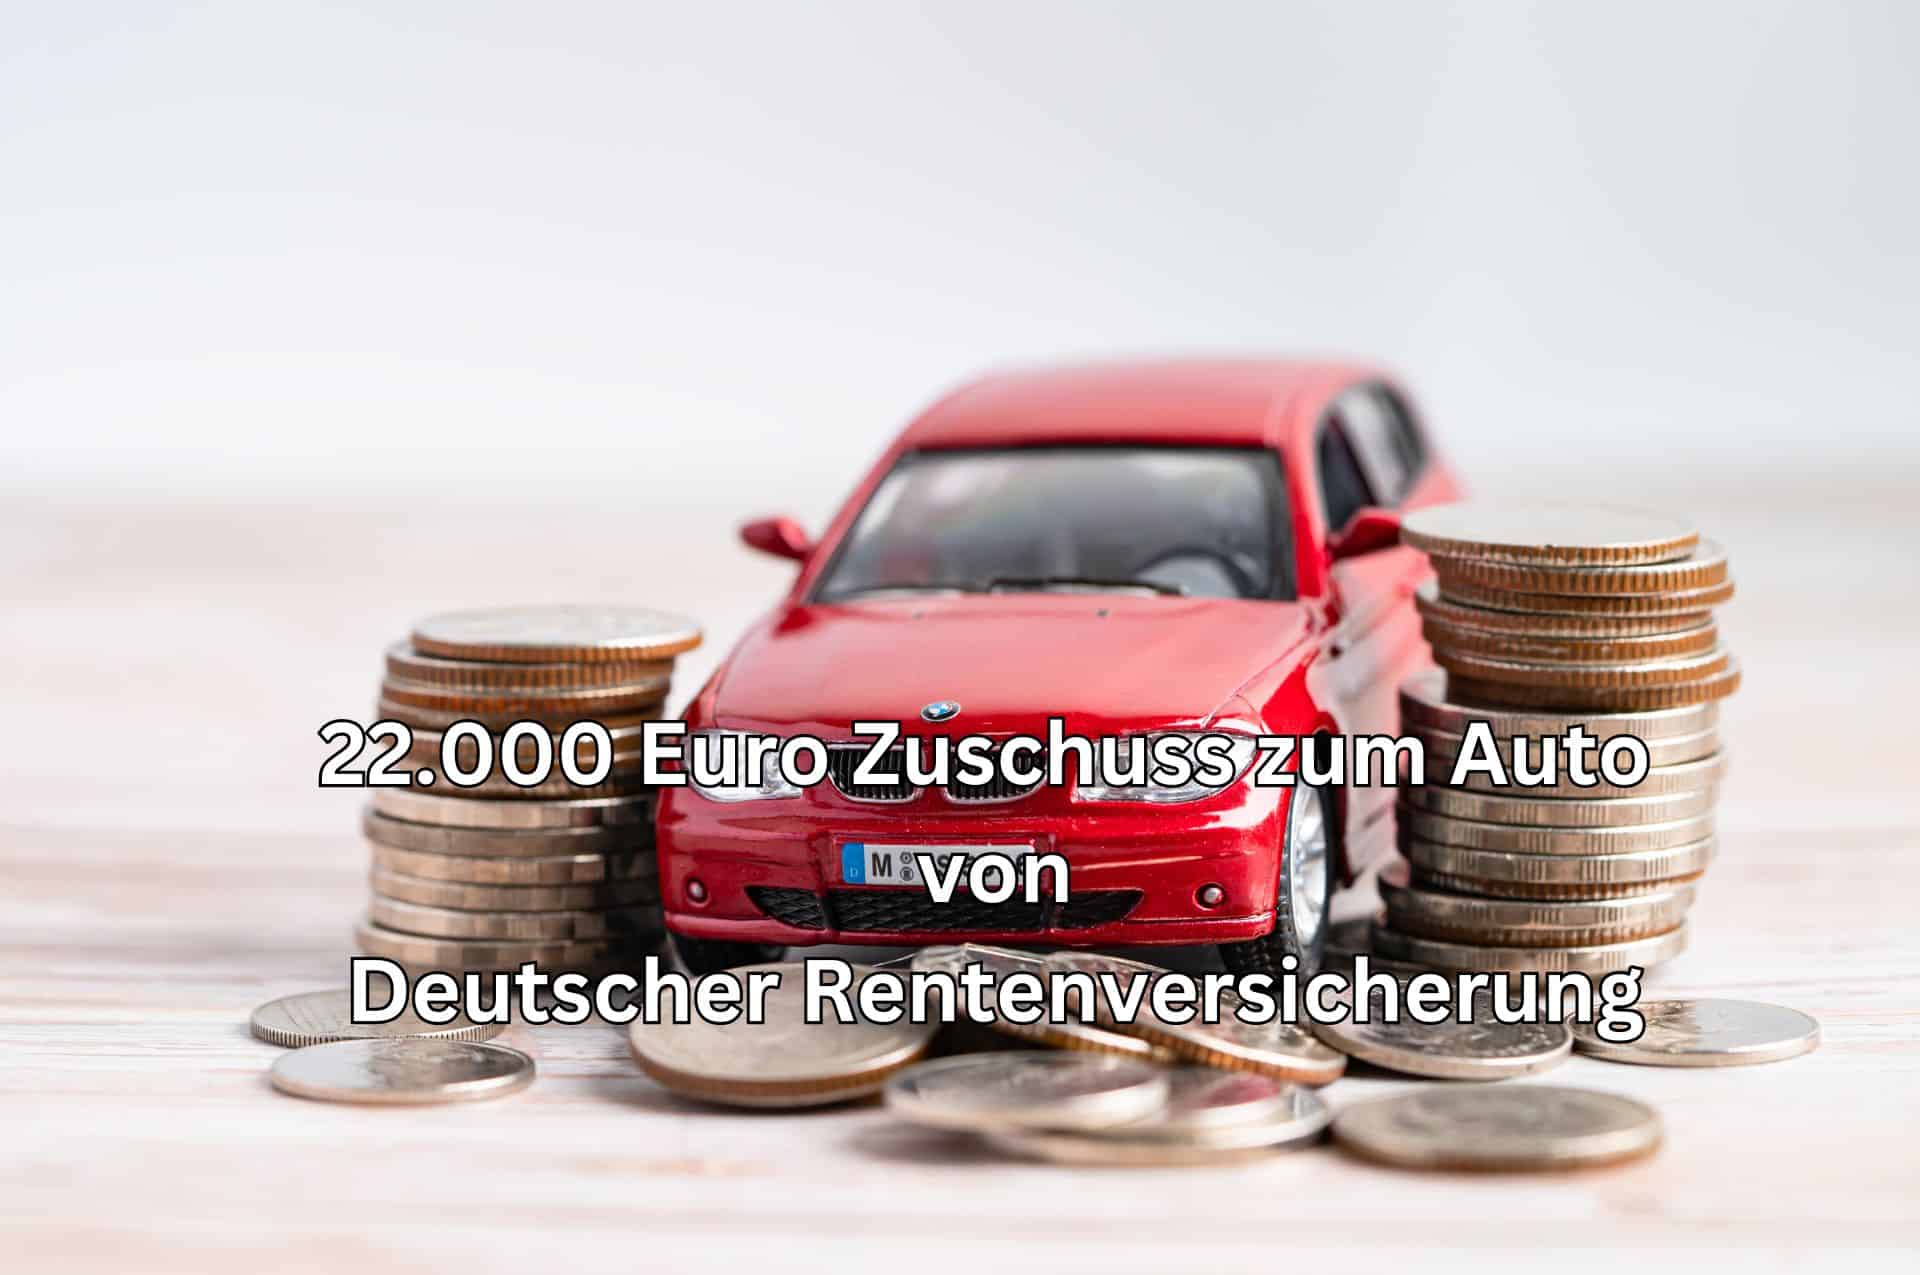 Staatlicher Zuschuss fürs Auto: 22.000 Euro Kraftfahrzeughilfe anstatt Rente